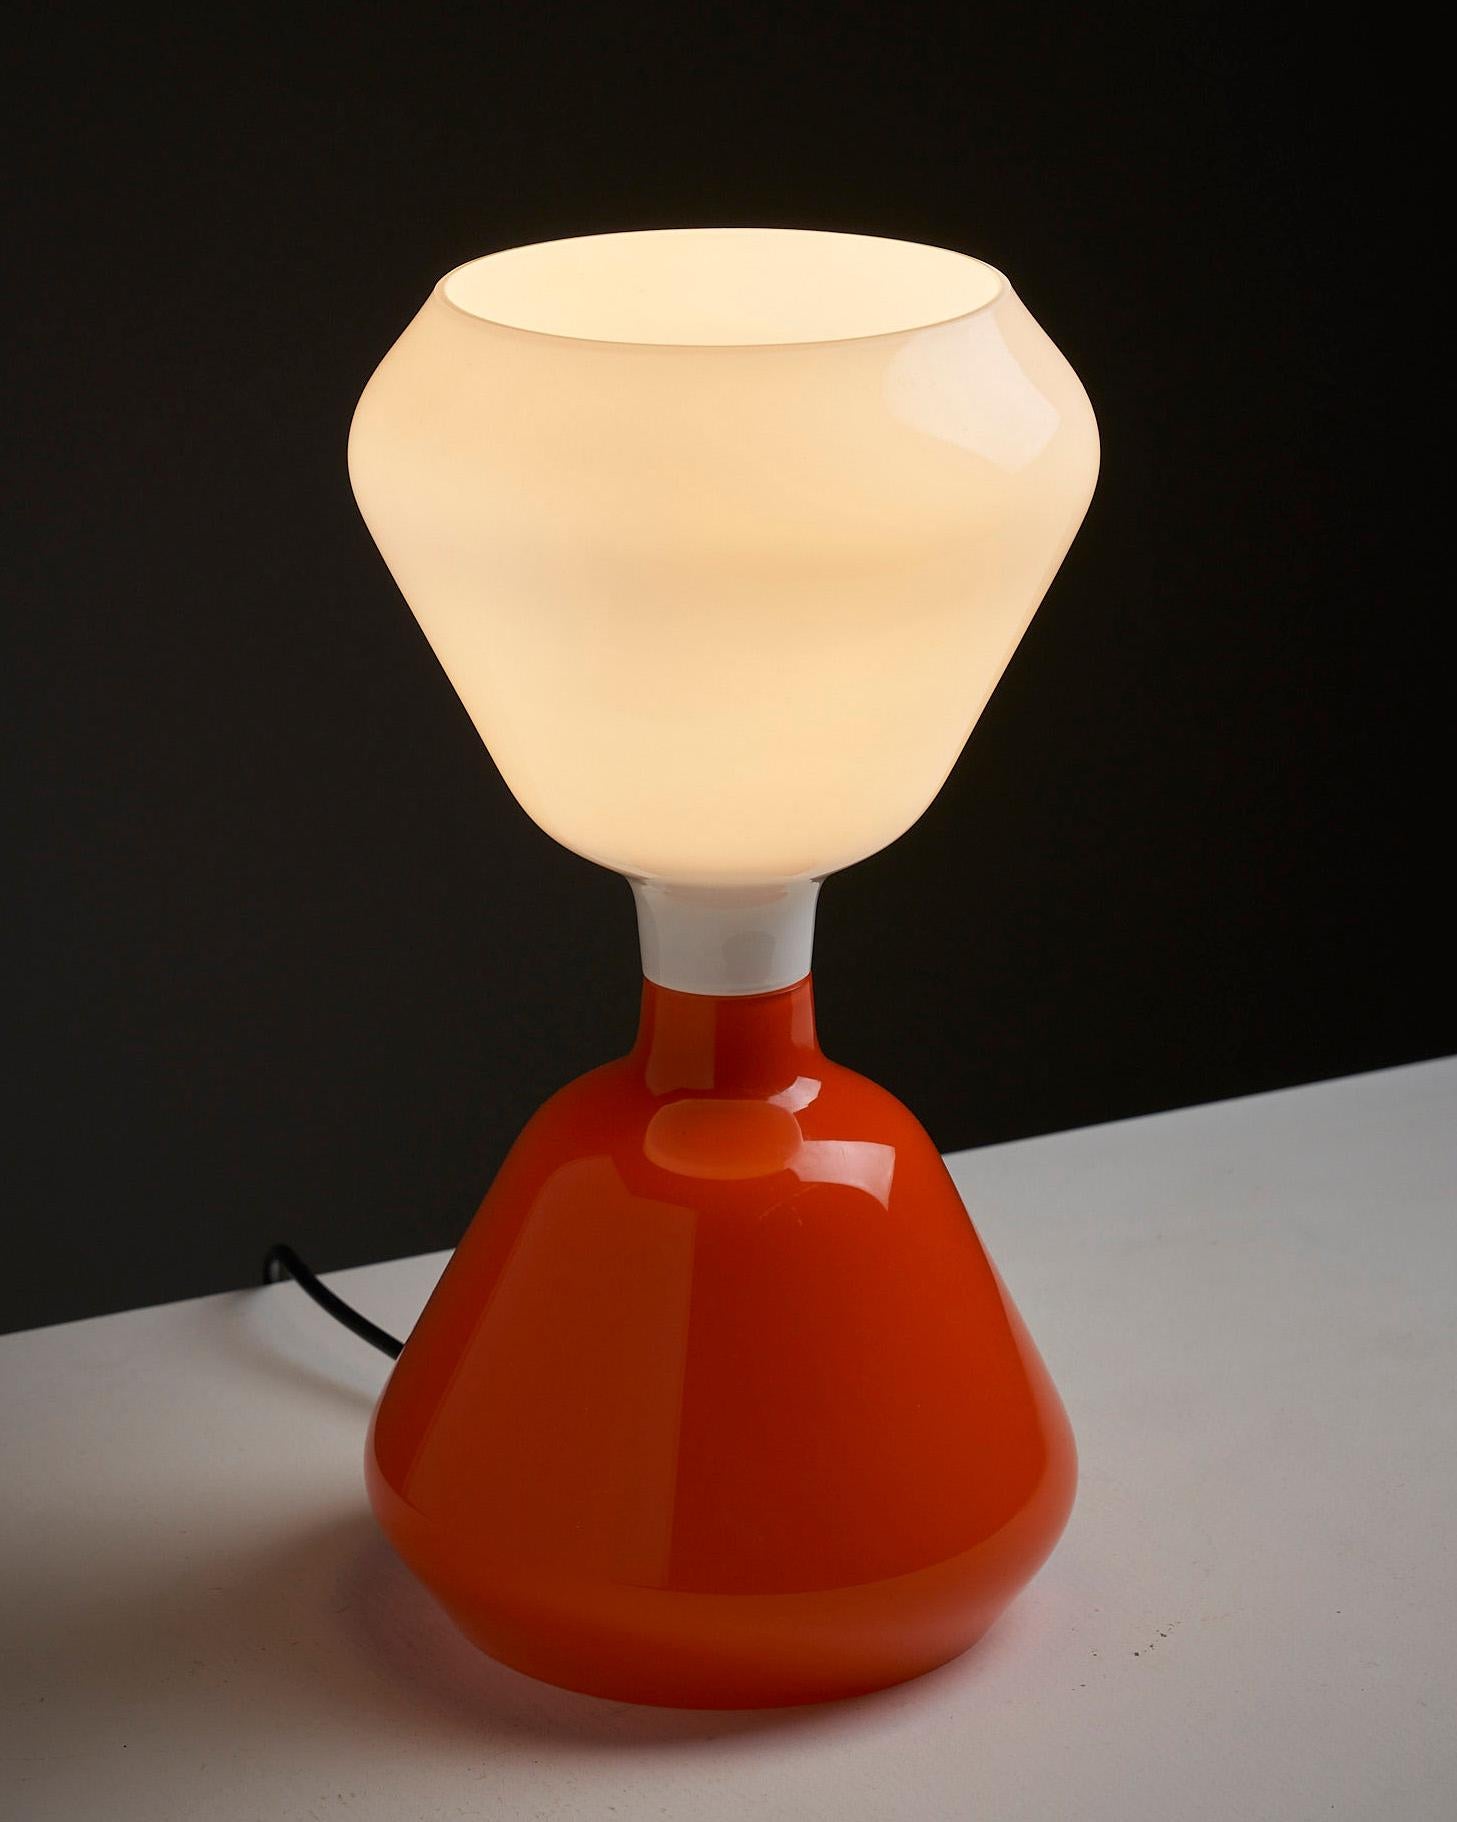 Lampe de table de Peter Pelzel pour Vistosi, Italie. Cette lampe est une pièce étonnante qui témoigne de la maîtrise du travail du verre par Vistosi. Il se compose de deux éléments en verre qui sont reliés par un effet de miroir, créant ainsi un